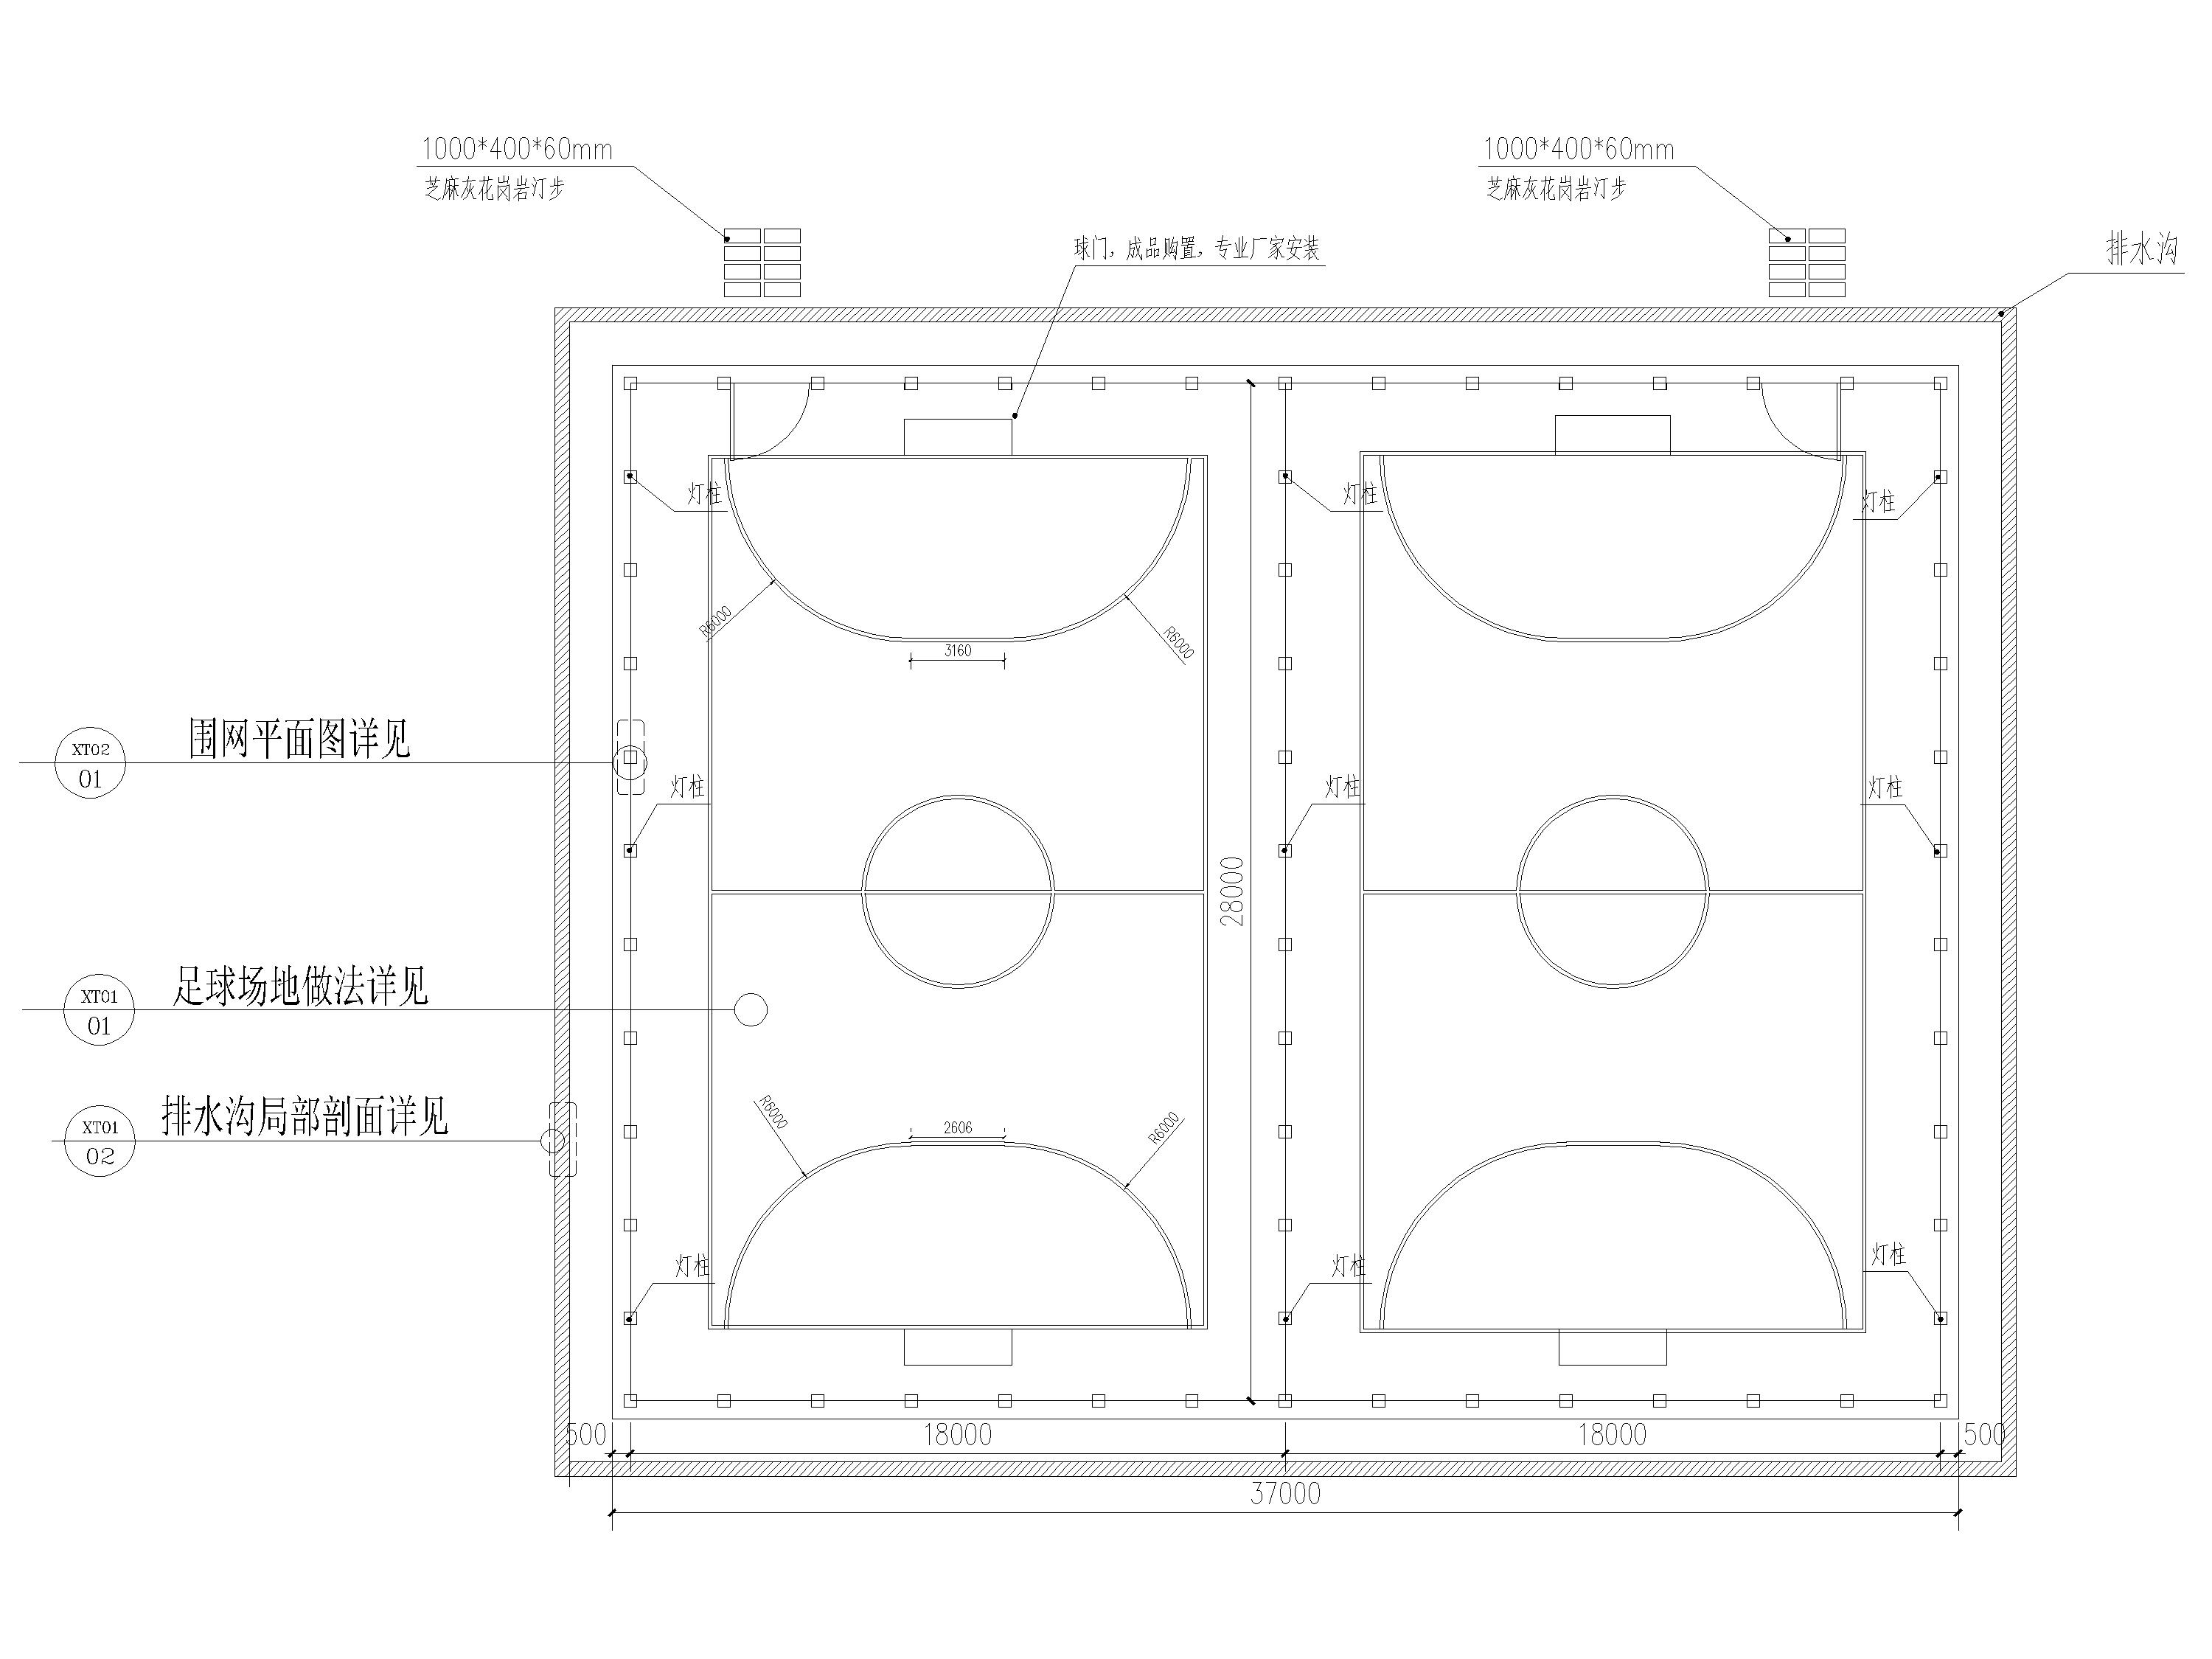 五人制故足球场地施工图专题为您提供五人制故足球场地施工图的相关